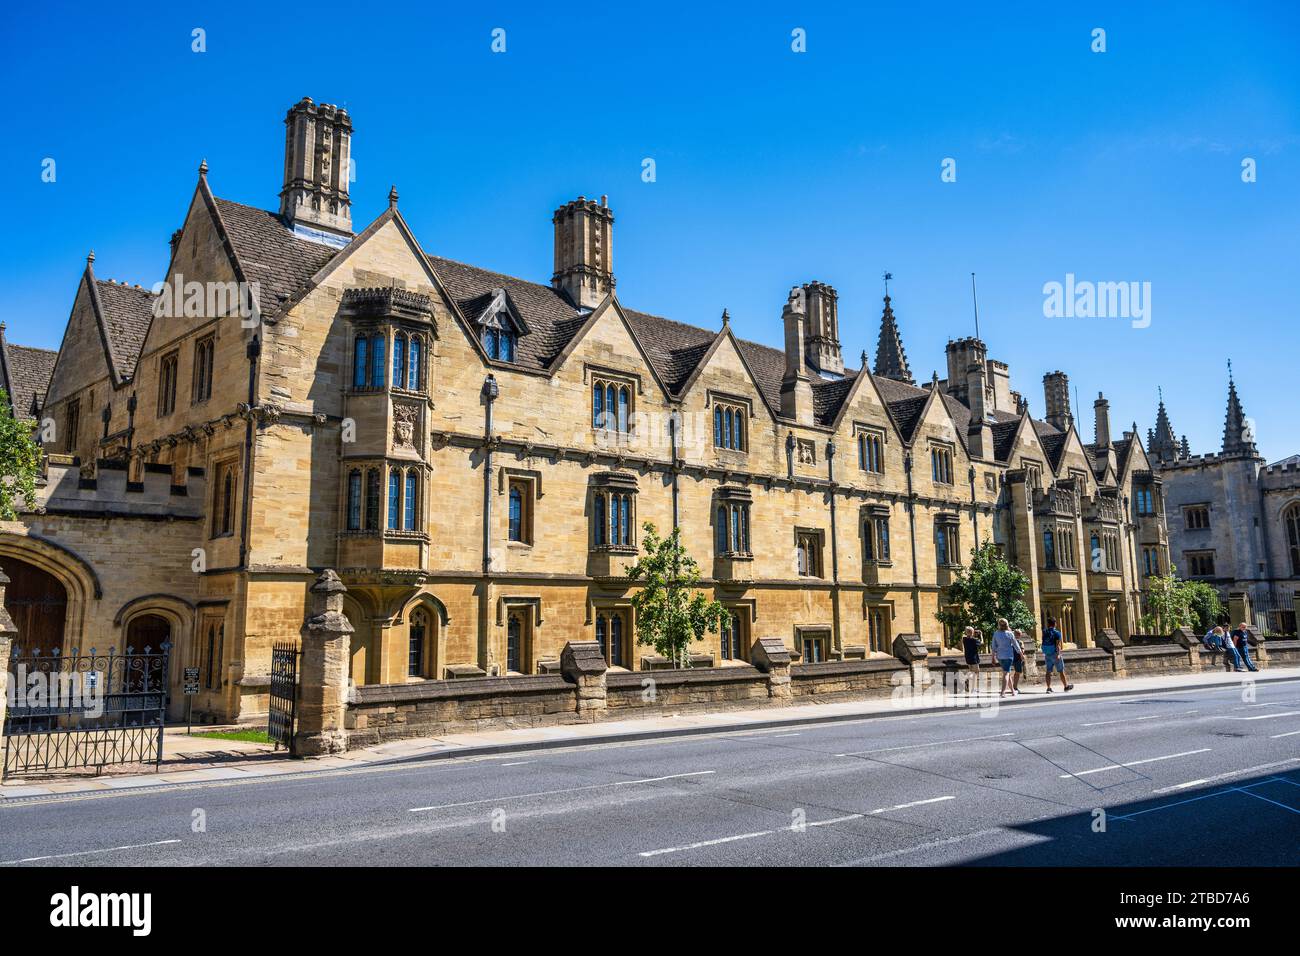 St Swithunn's Quad, Magdalen College, Université d'Oxford, de High Street dans le centre-ville d'Oxford, Oxfordshire, Angleterre, Royaume-Uni Banque D'Images